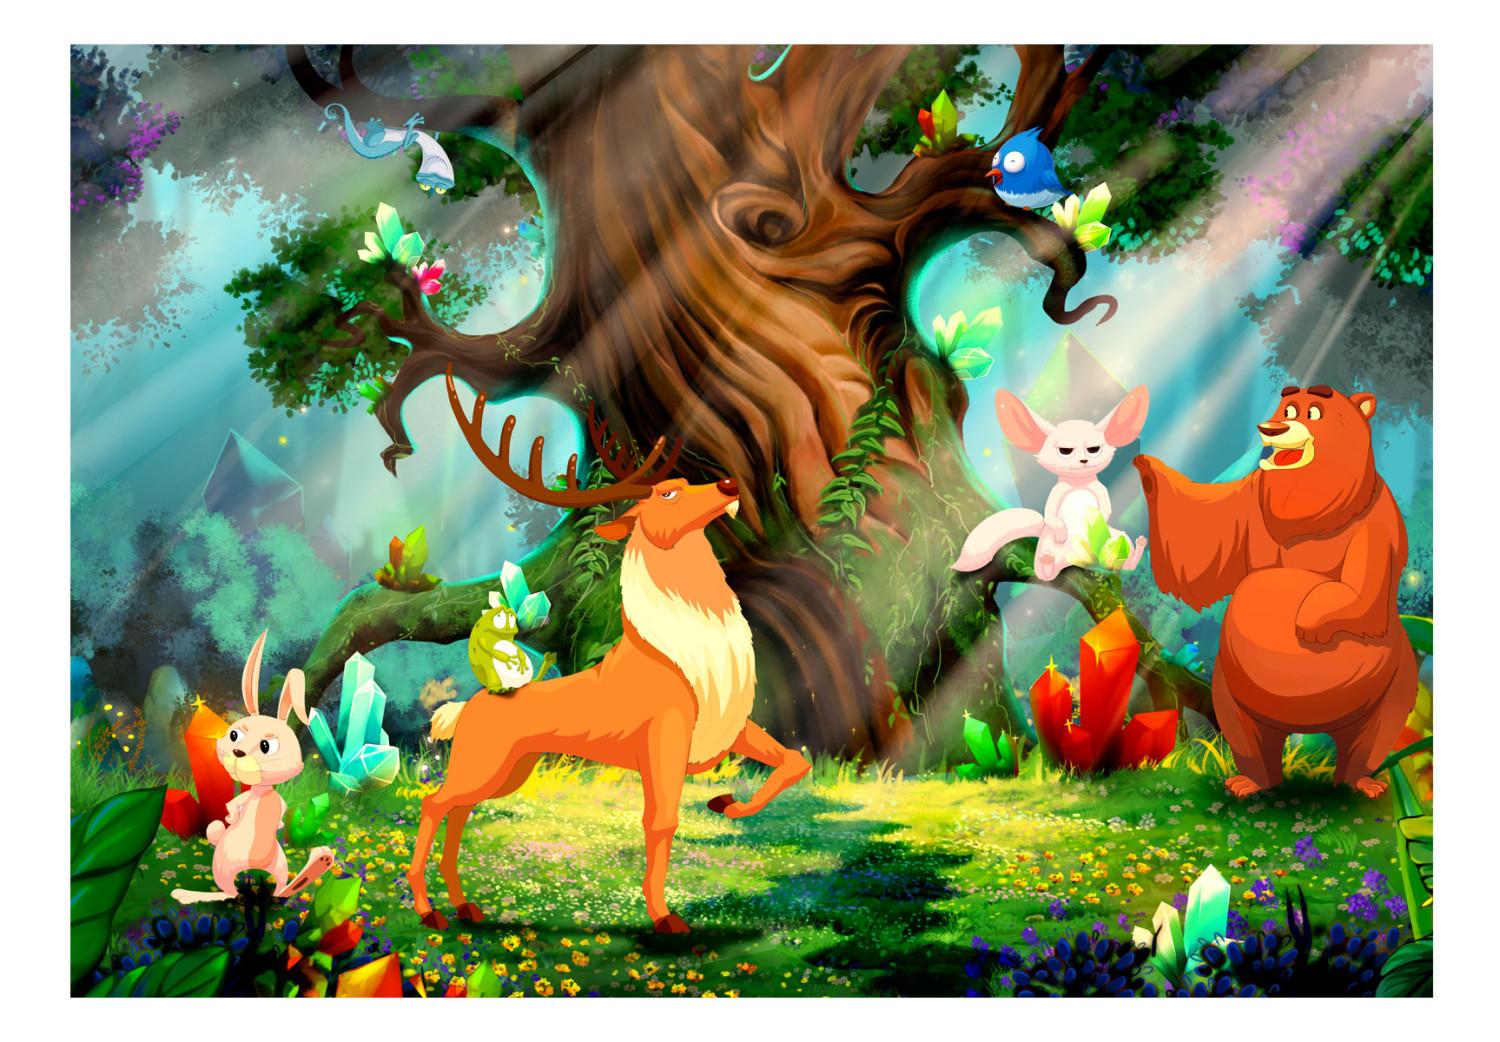 Fotomural decorativo Oso y amigos - animales del bosque para niños